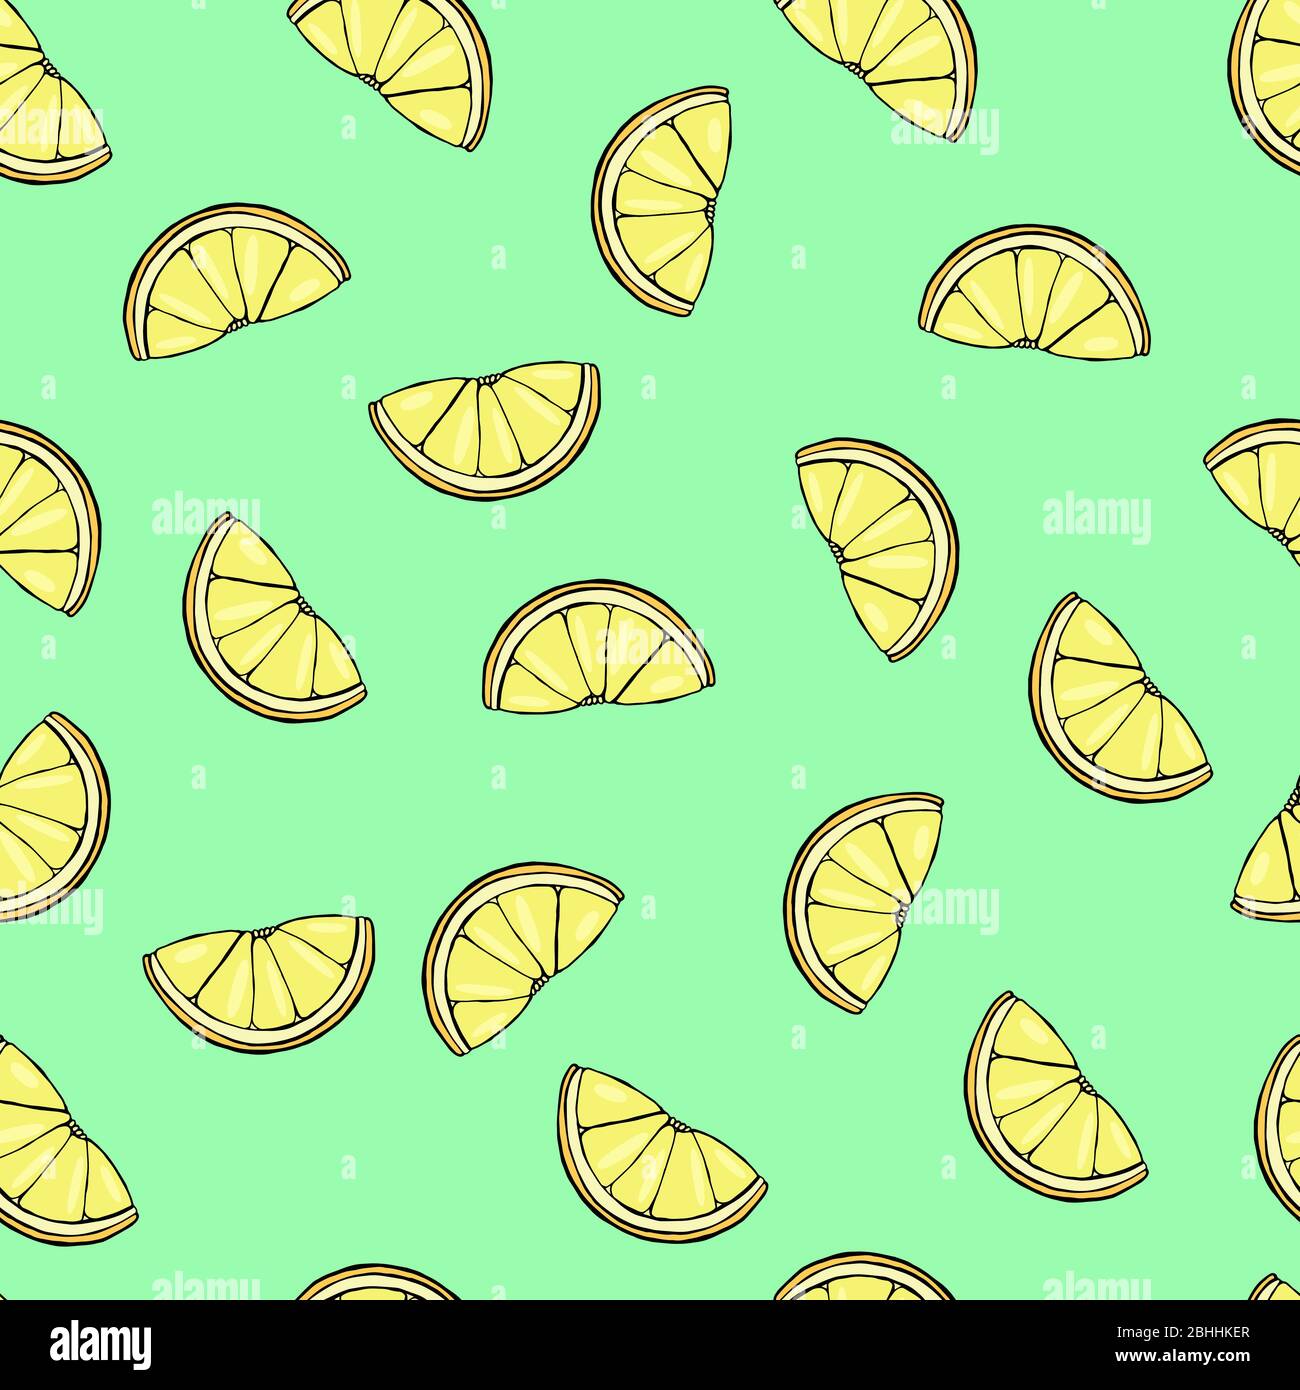 Fresh lemons seamless pattern. Stock Vector